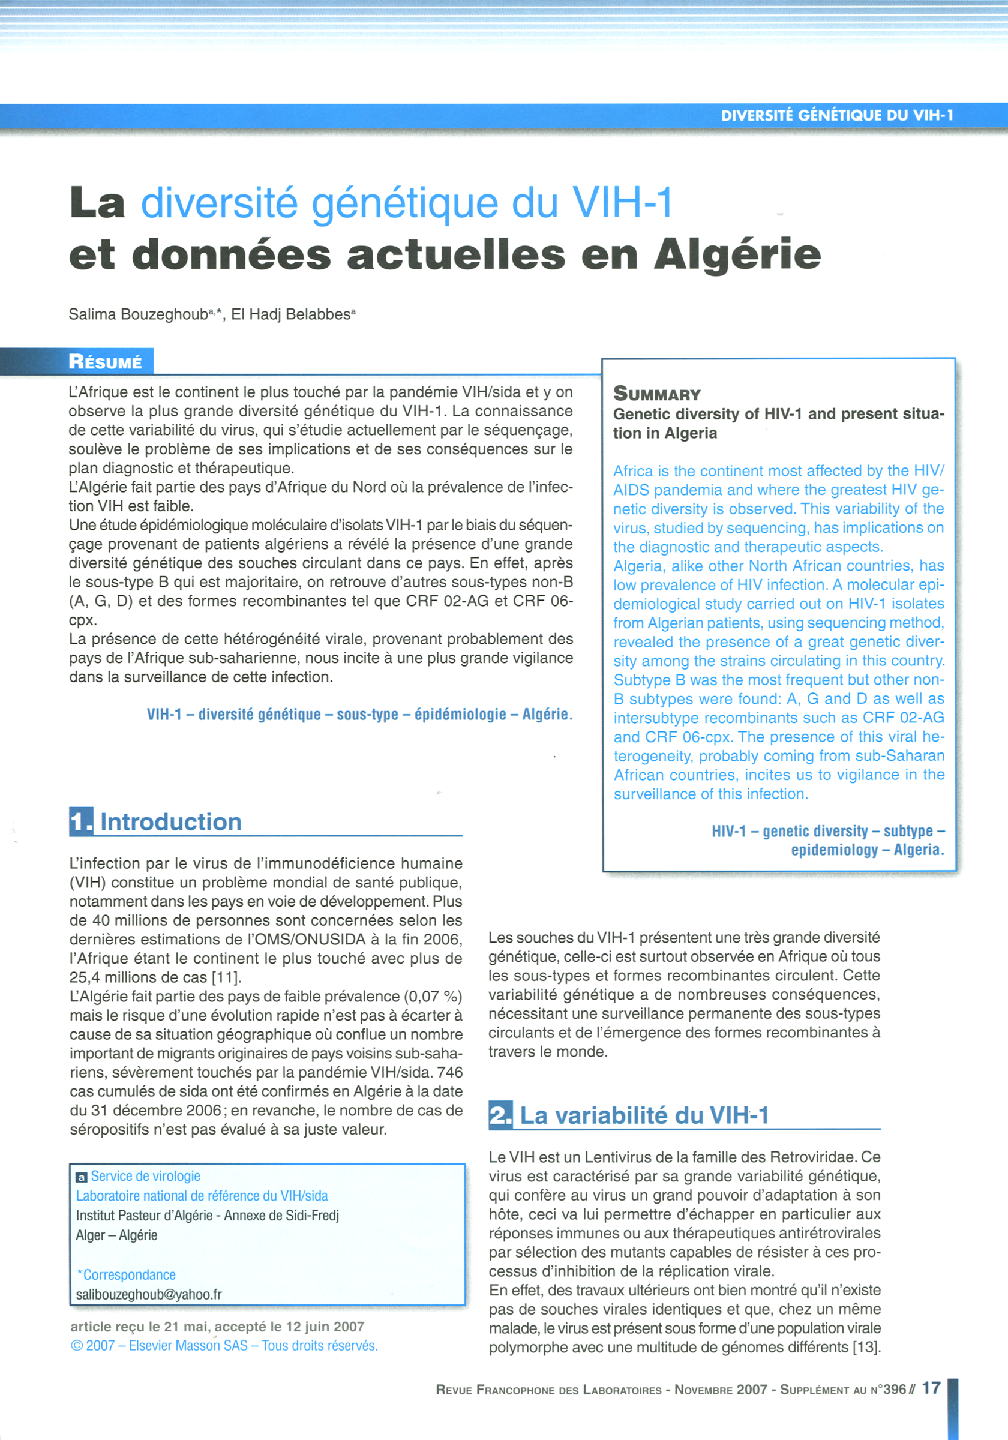 La diversité génétique du VIH-1 et données actuelles en Algérie